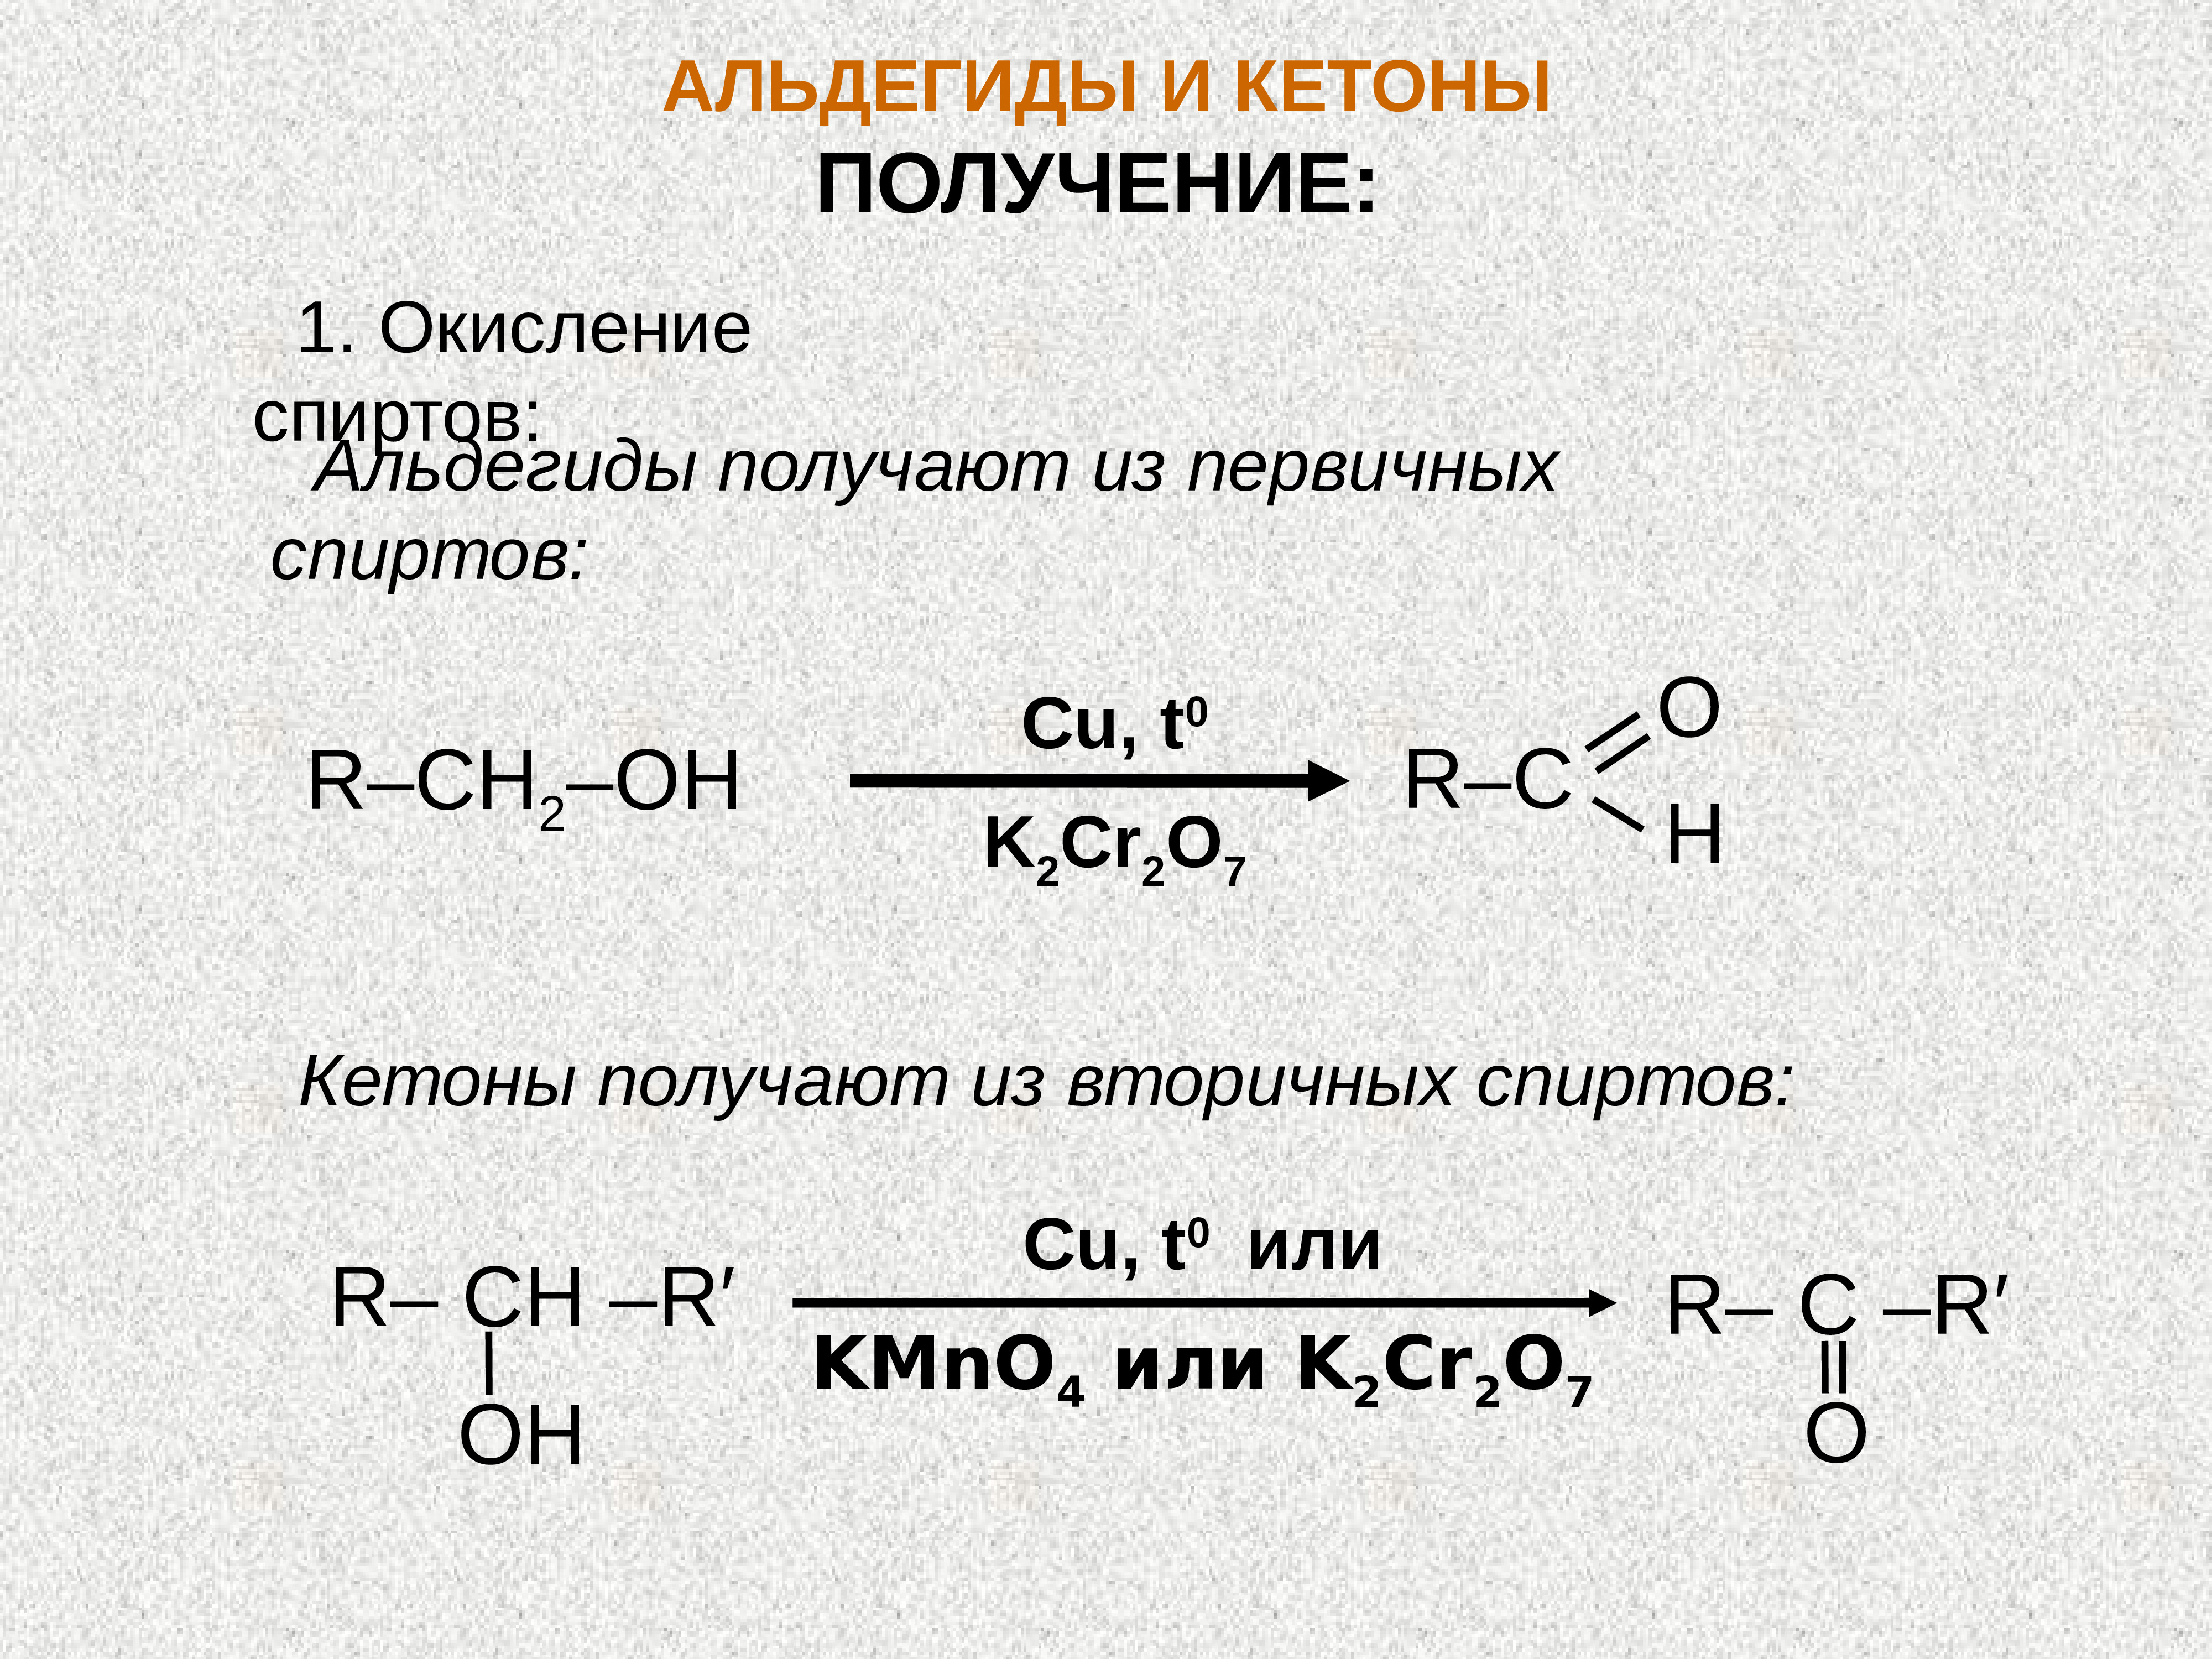 Кетон алкан. Способы получения альдегидов и кетонов кратко. Как получают альдегиды и кетоны. Получение кетона из спирта. Окисление спиртов до альдегидов медью.